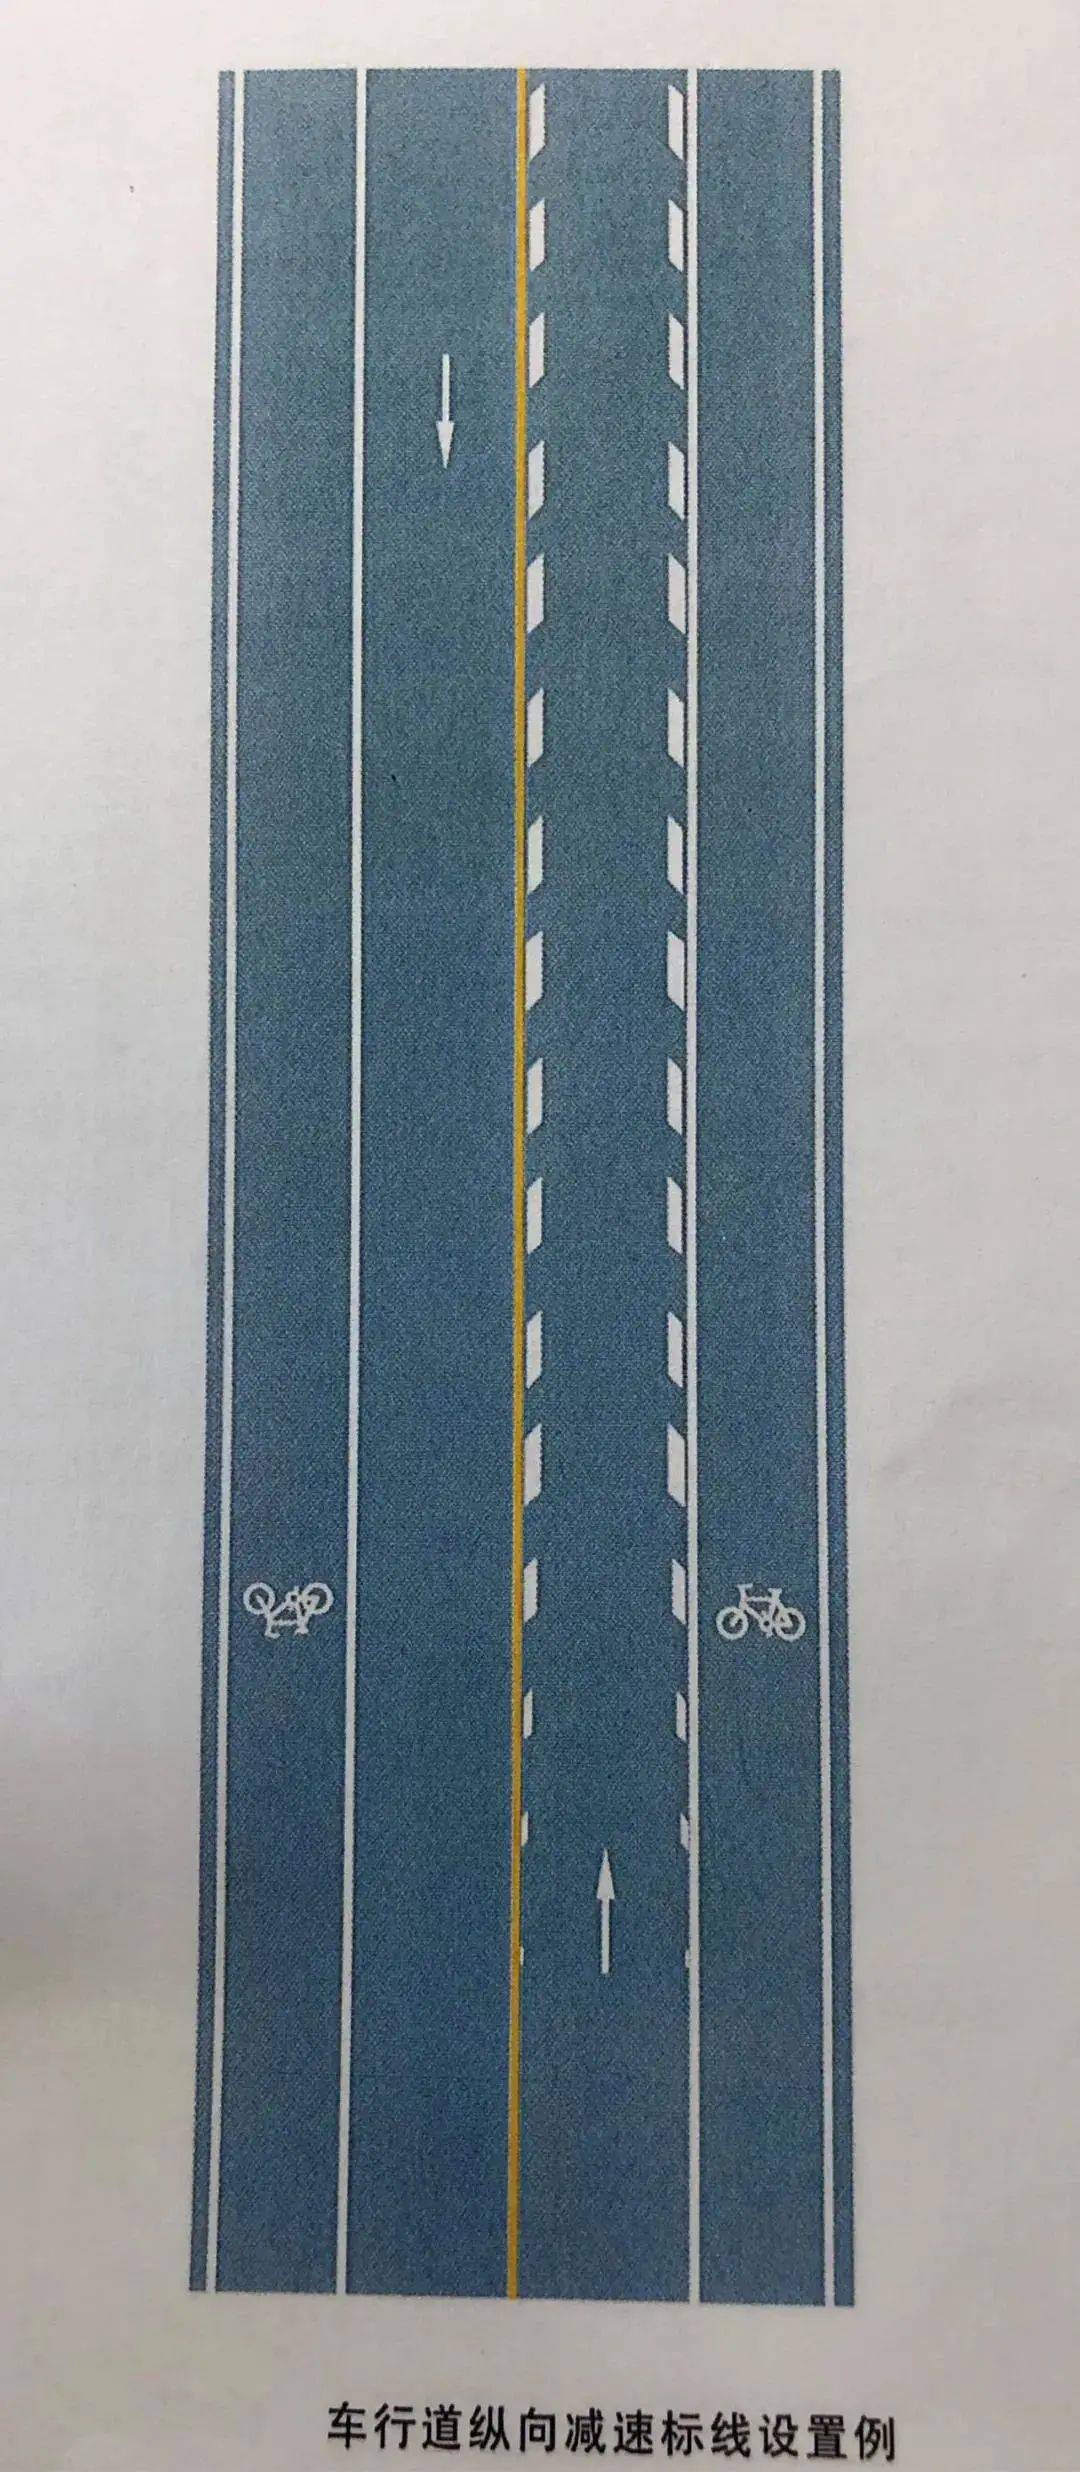 车行道纵向减速标线图片